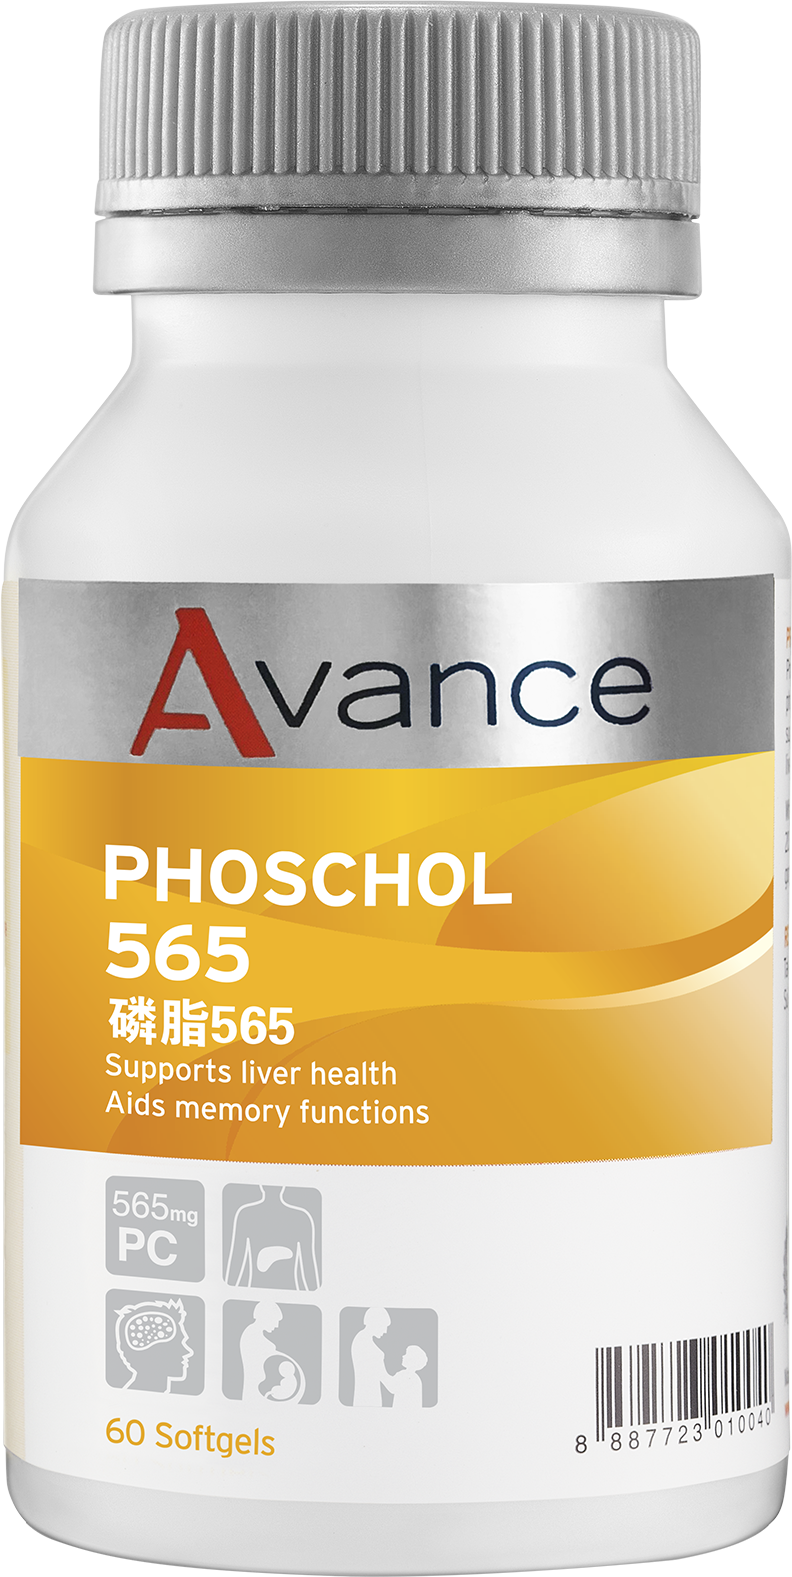 PhosChol 565